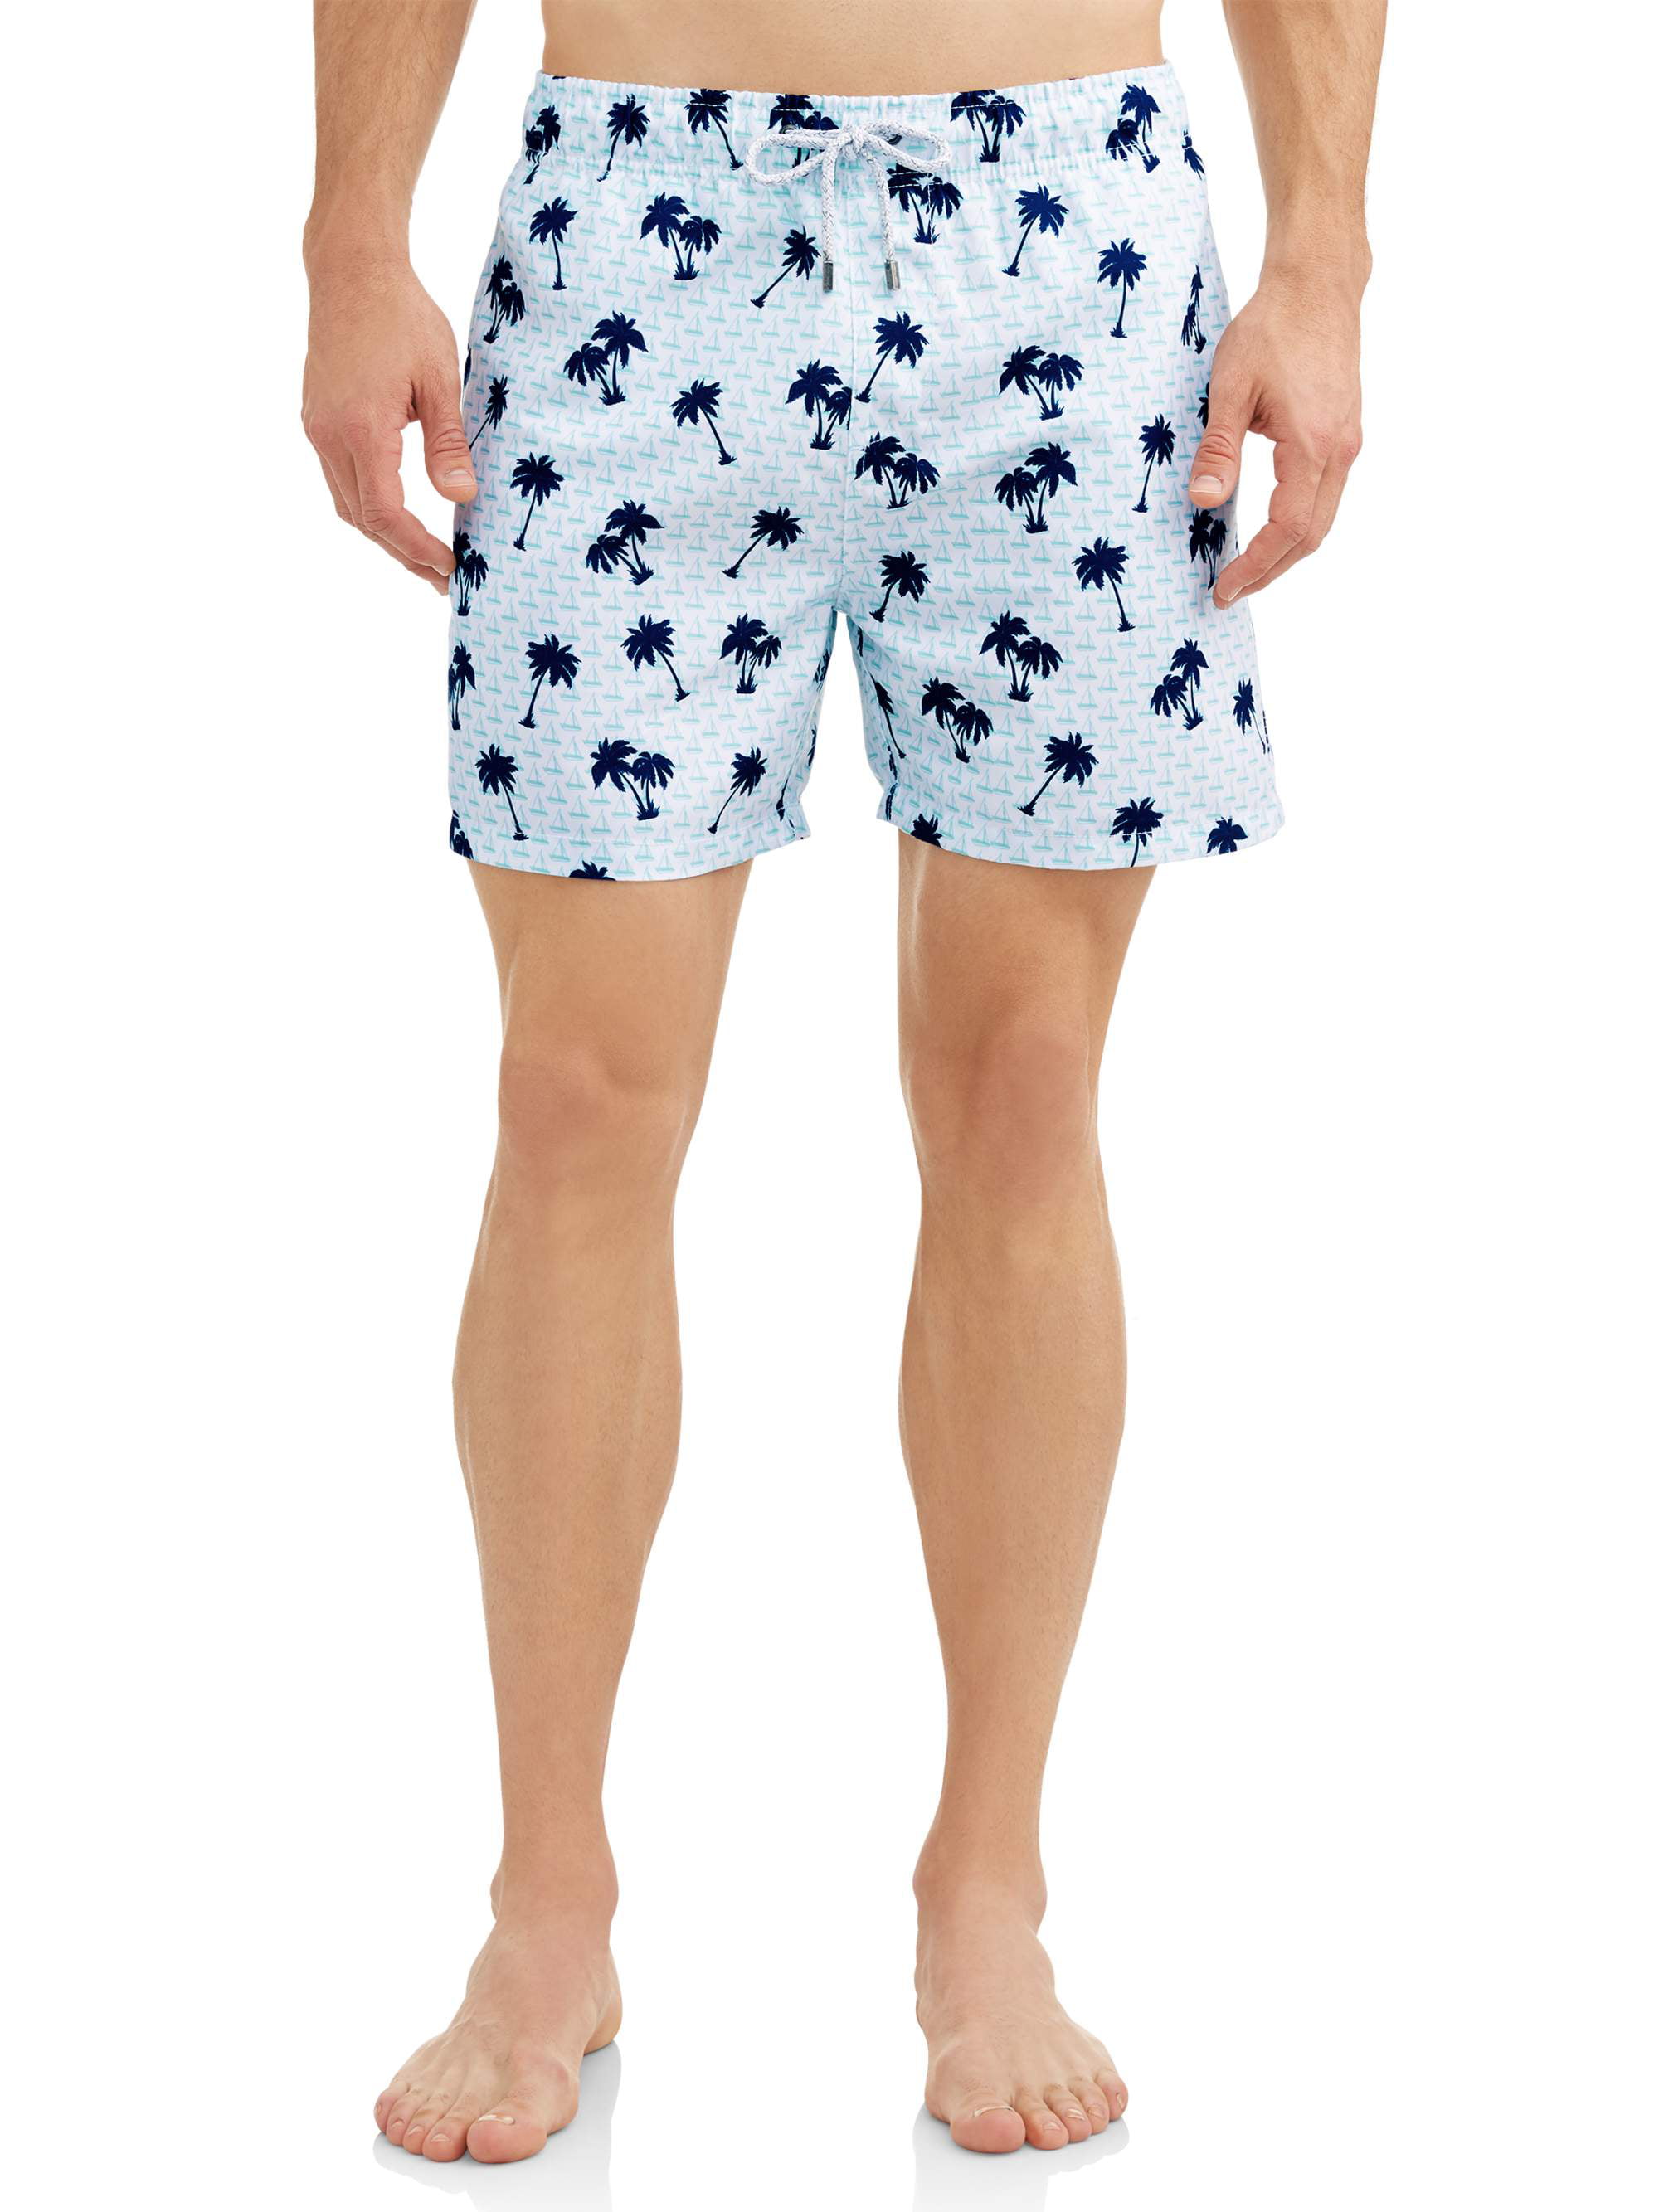 Ina Fers stranger-things-season-3-poster-4 Swim Trunks Quick Dry Short Board Shorts for Men